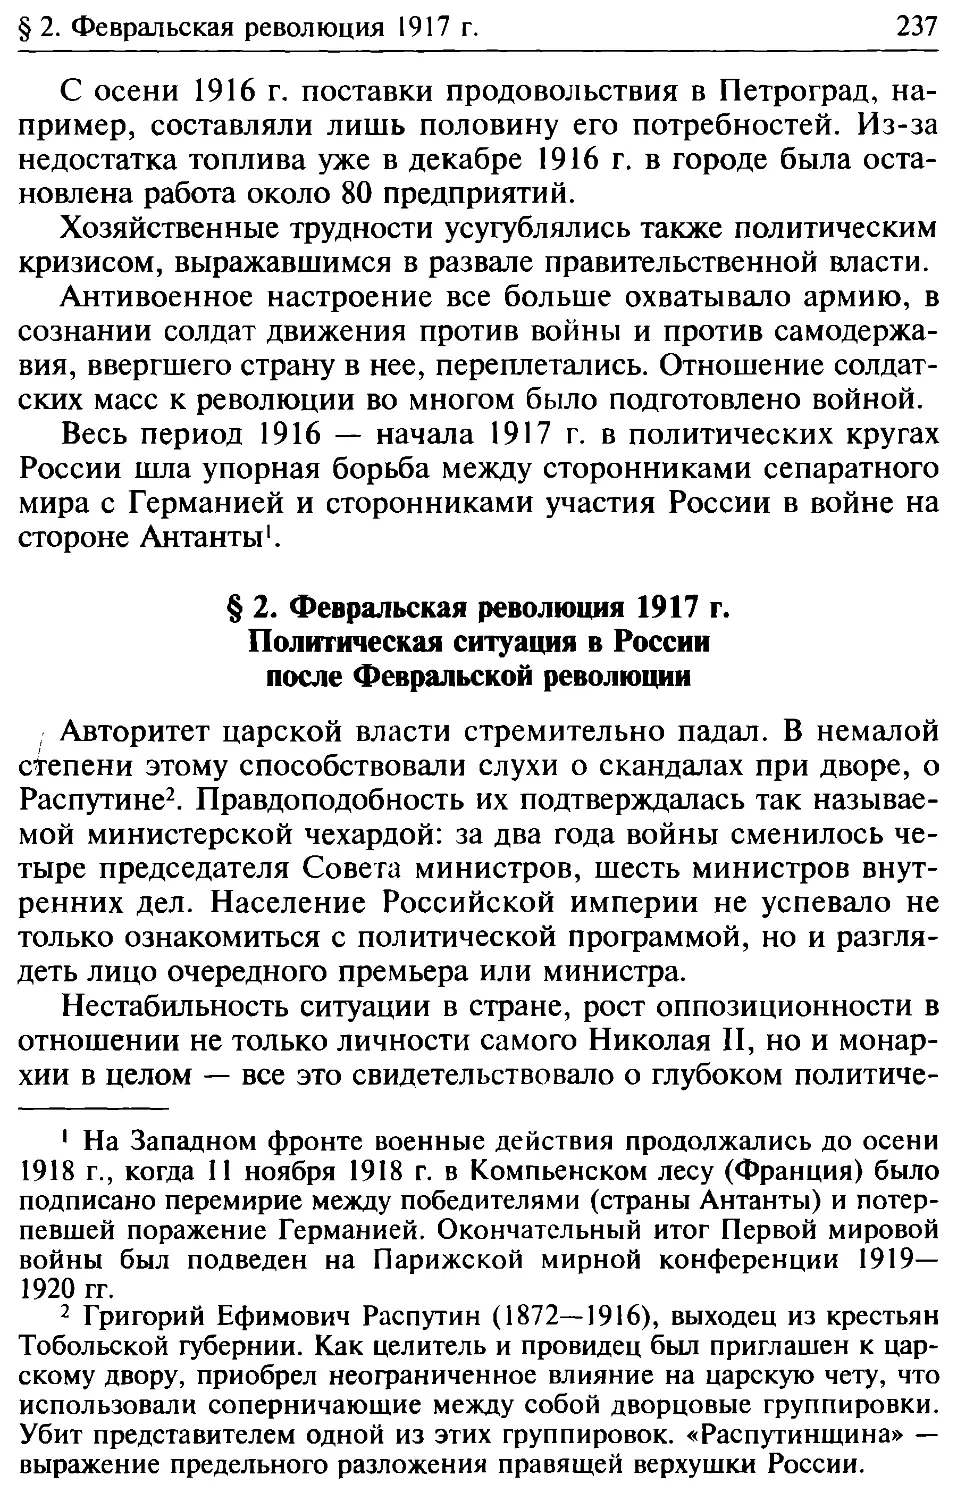 § 2. Февральская революция 1917 г. Политическая ситуация в России после Февральской революции